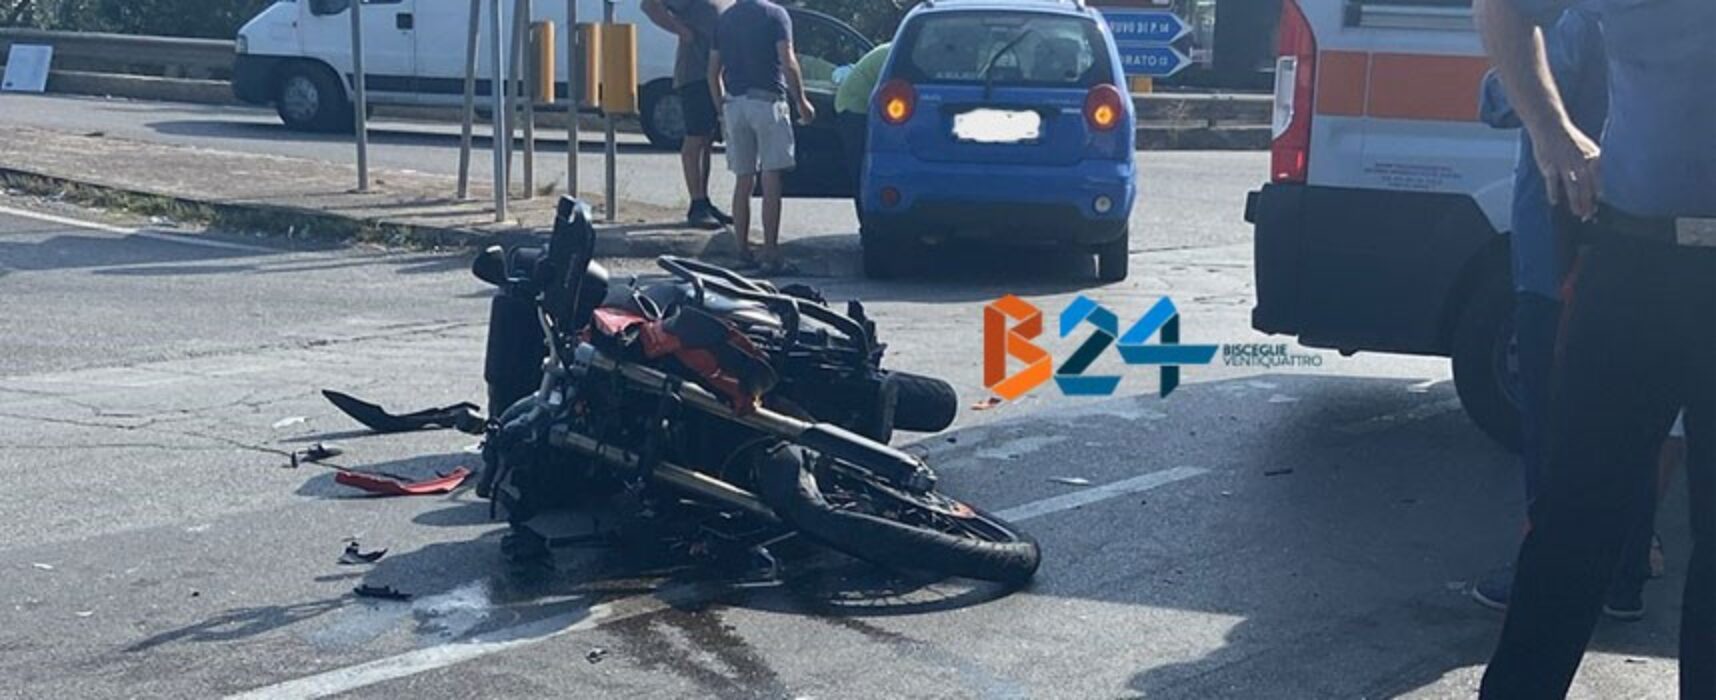 Scontro auto-moto su via Sant’Andrea, un ferito trasportato in ospedale